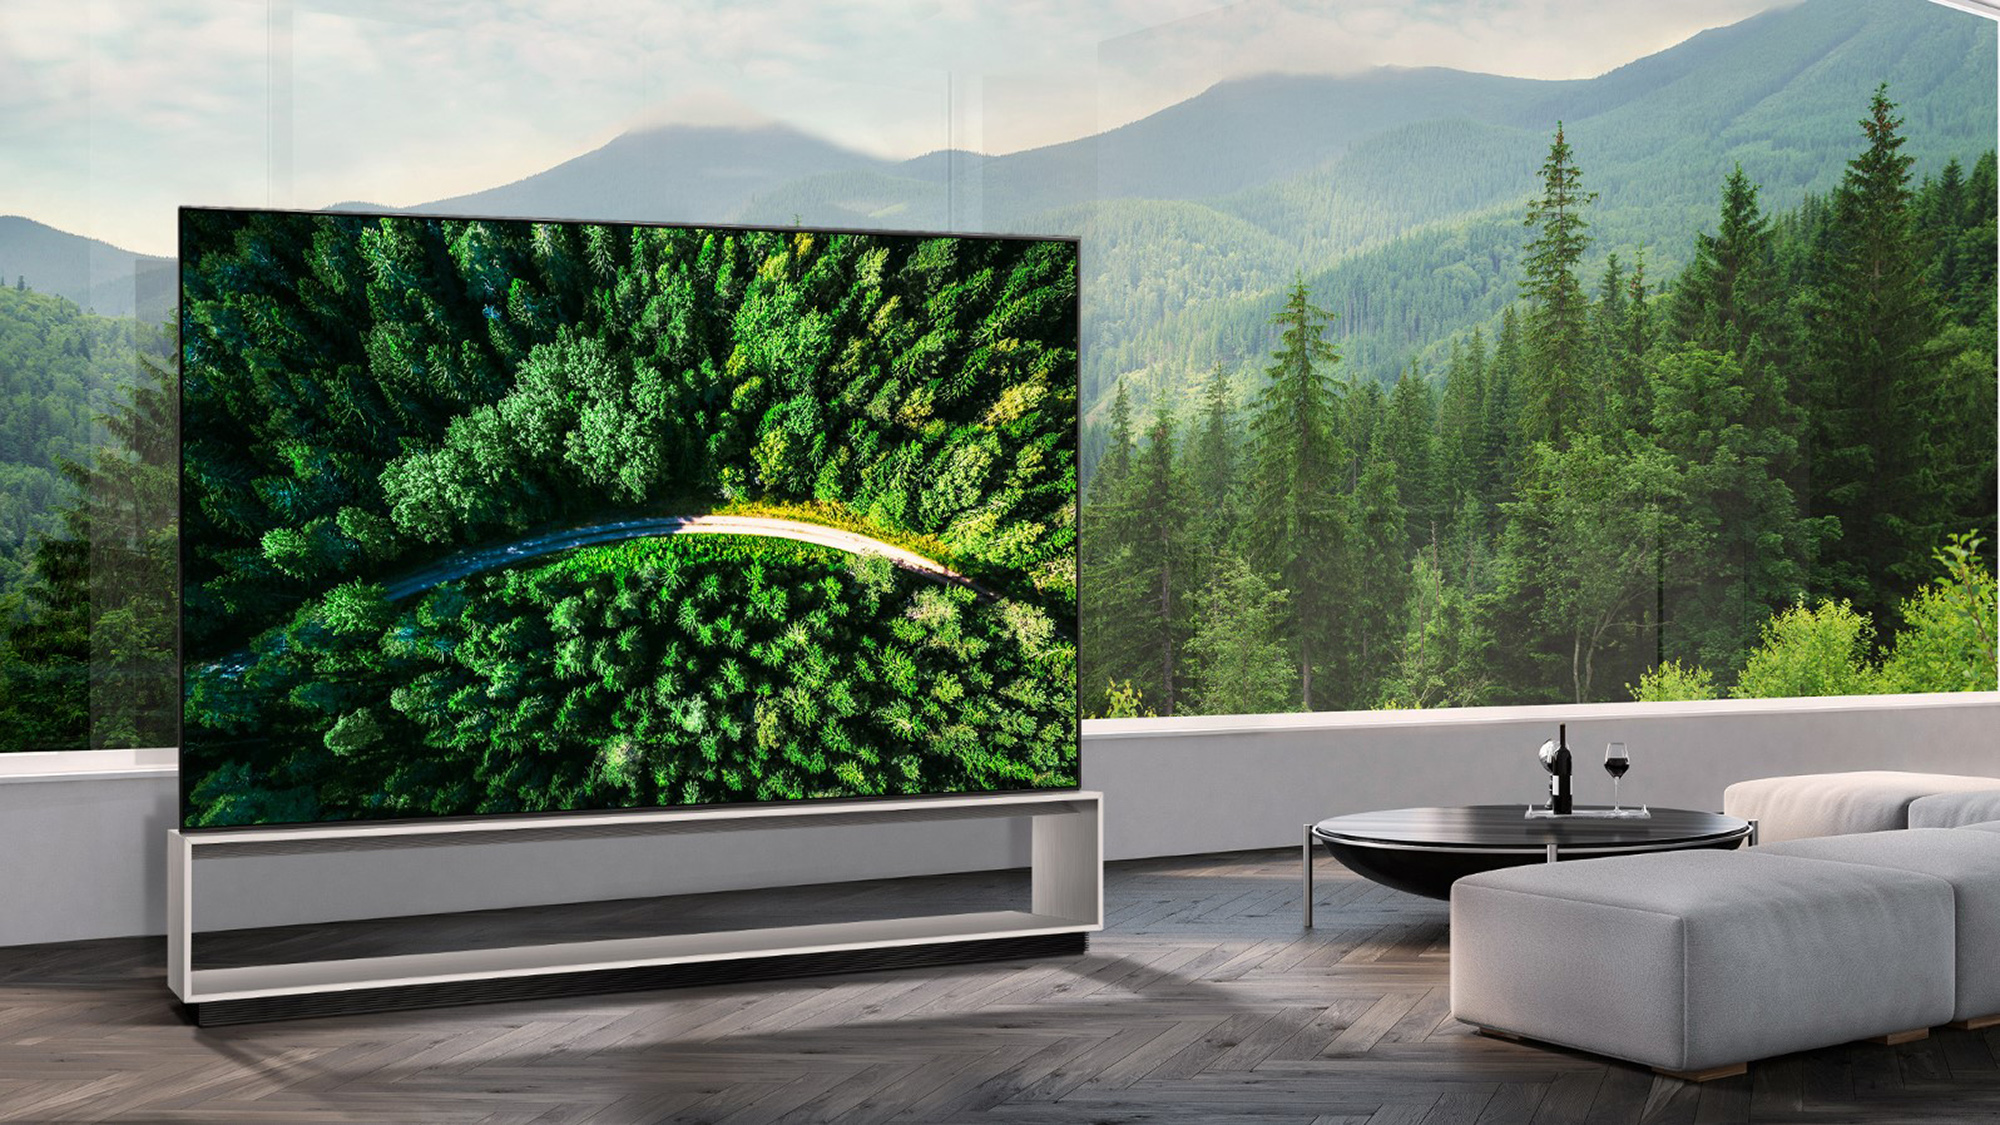 8K TVs - Smart TVs with Stunning Resolution